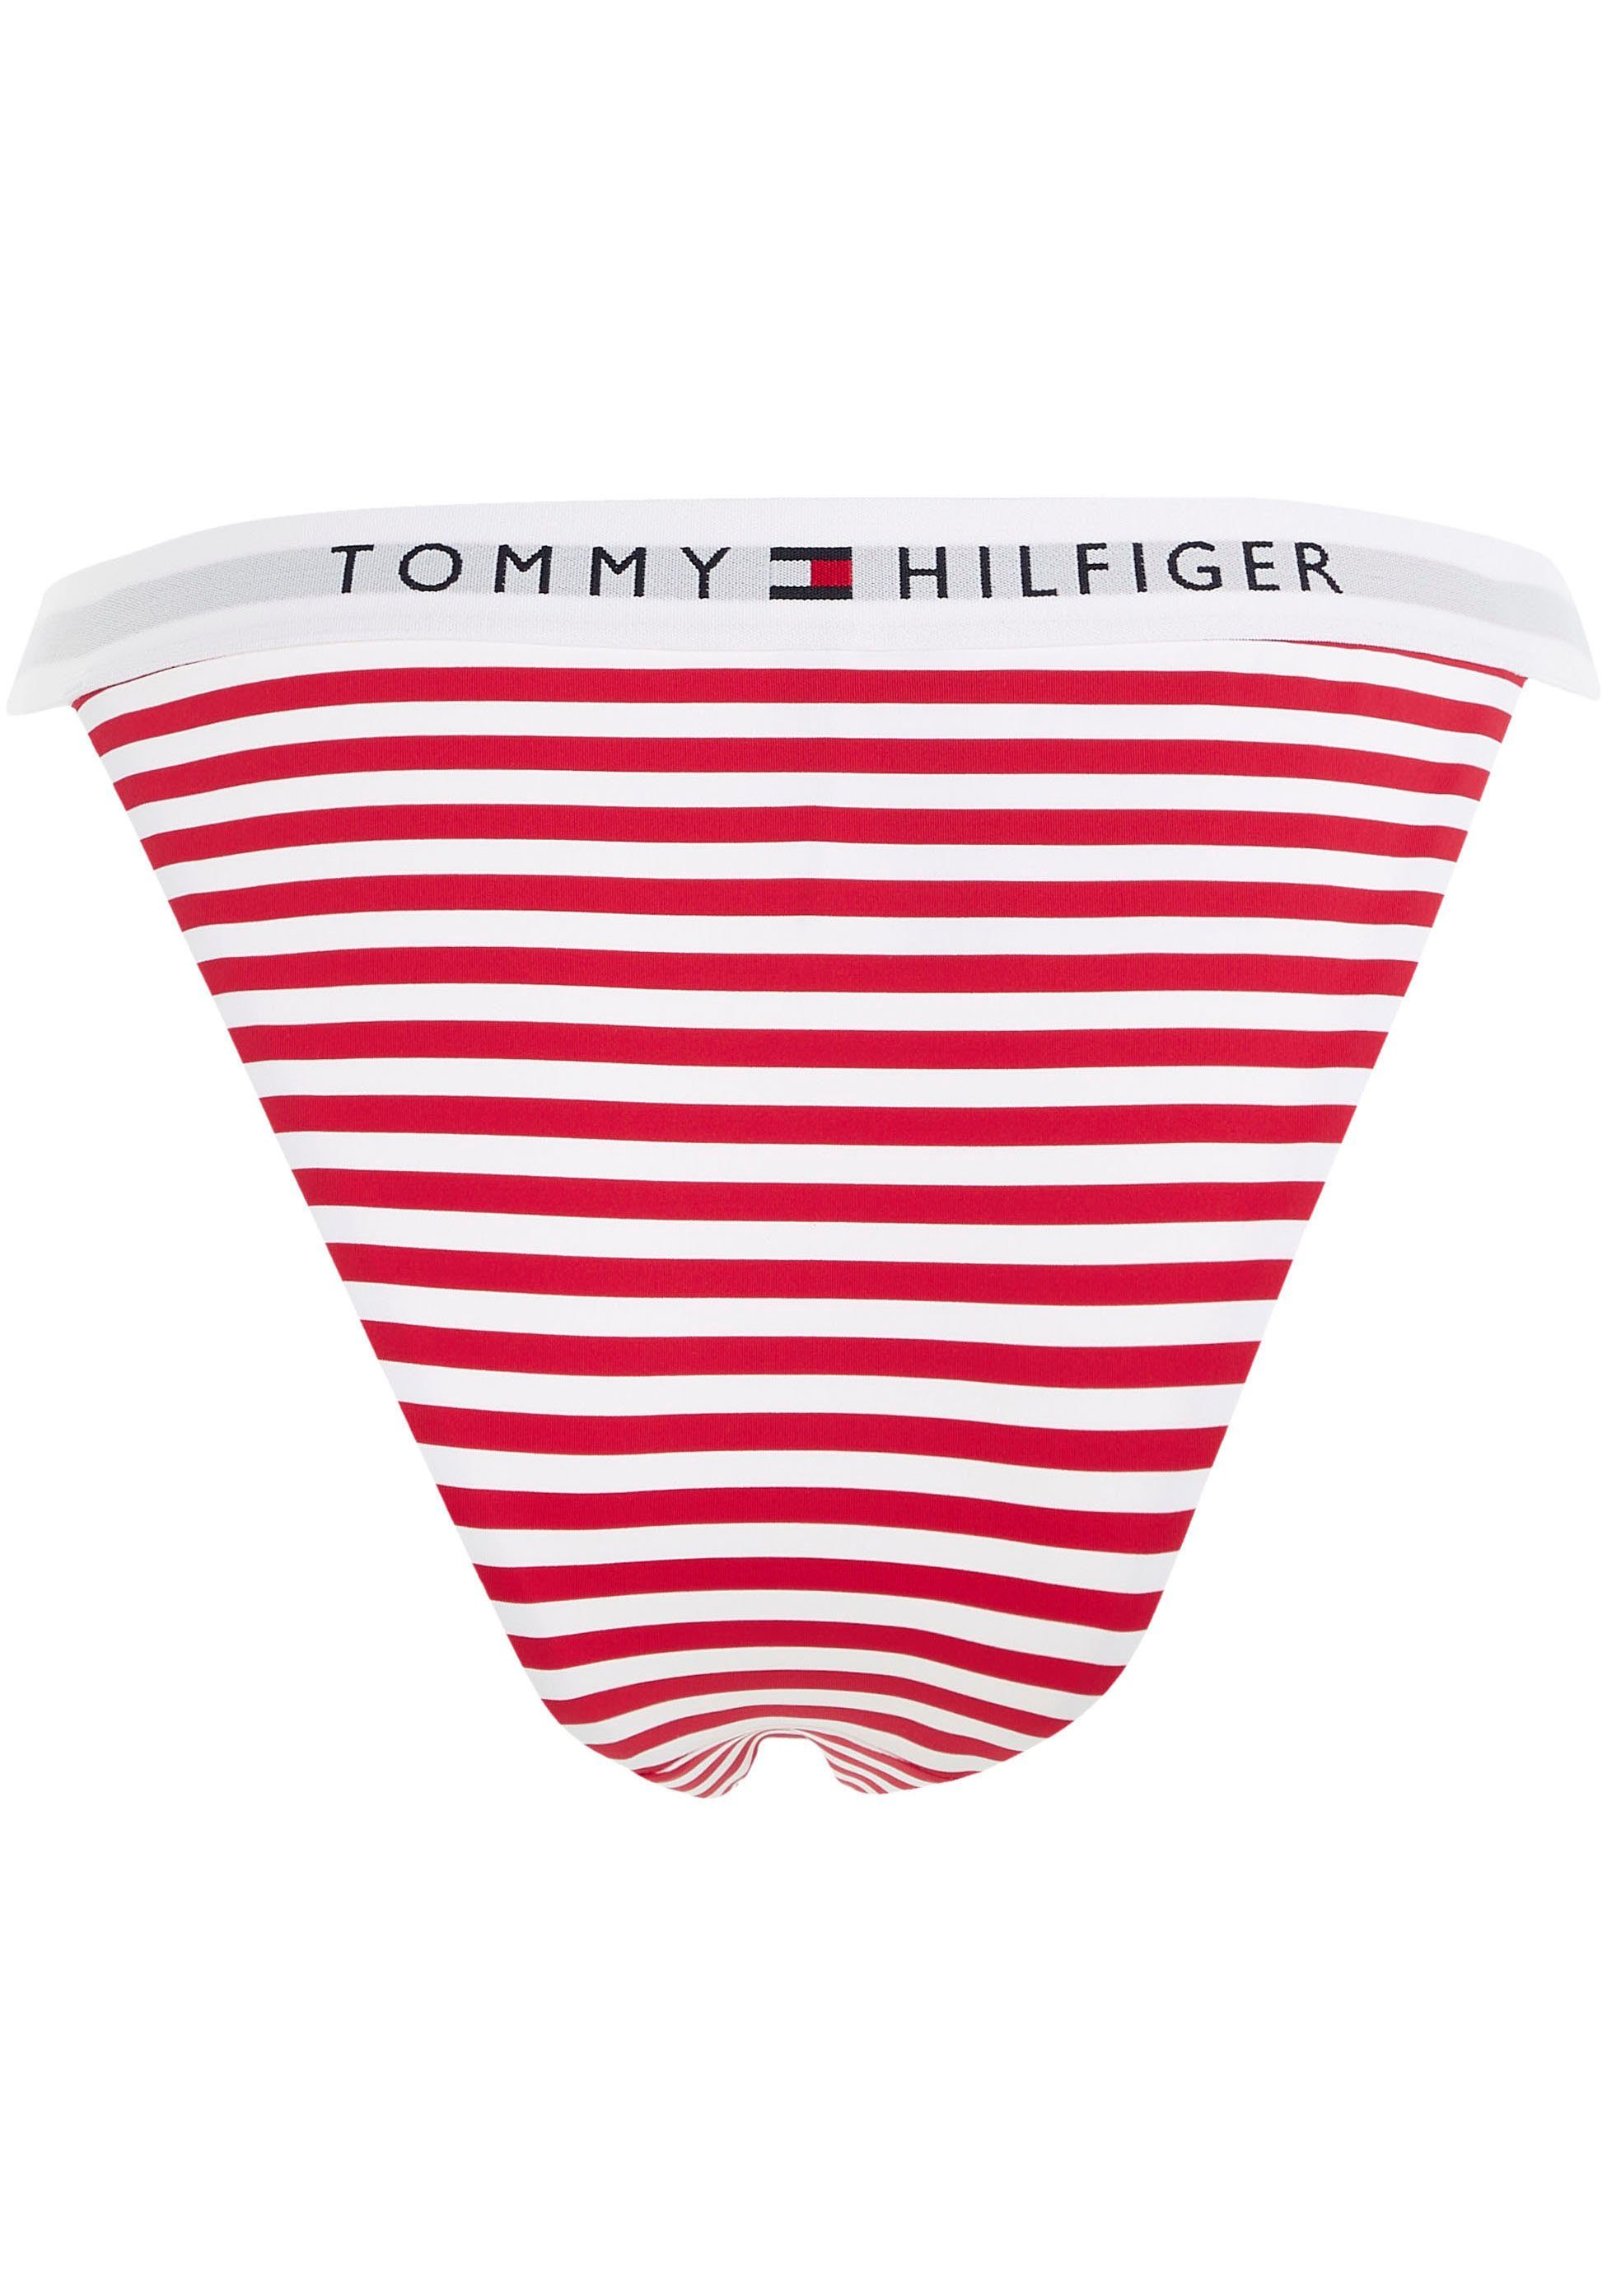 Hilfiger-Branding PRINT Hilfiger Tommy Swimwear Tommy CHEEKY Bikini-Hose mit BIKINI WB TH